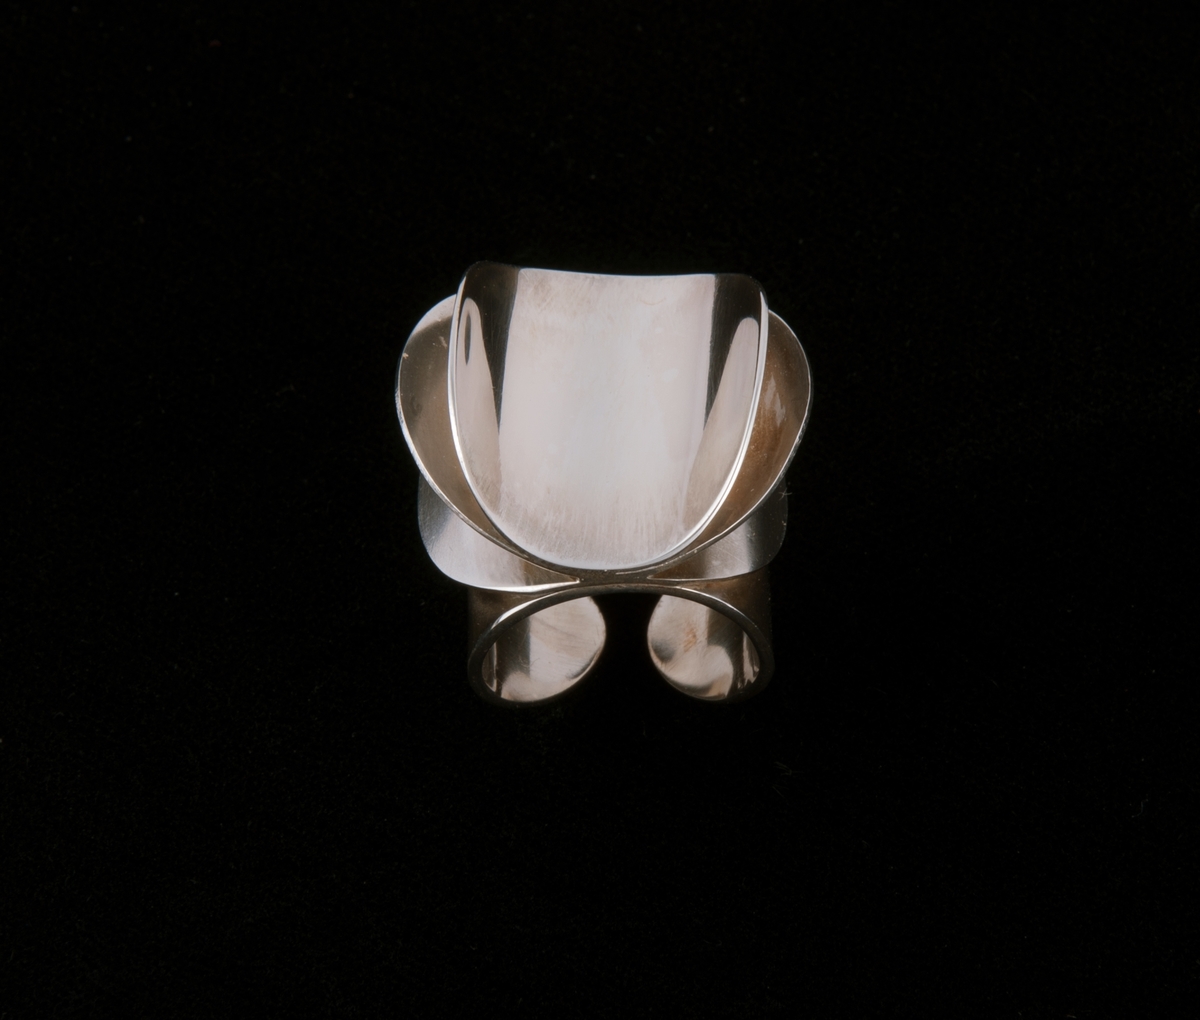 Består av tre like store sirkulære sølvringer som er satt sammen langs en midtakse. På hver siden av aksen er ringene bøyd oppover i ulik grad, symmetrisk på hver side. Dekoren er festet på en fjerde rund form som danner ringen rundt fingeren.